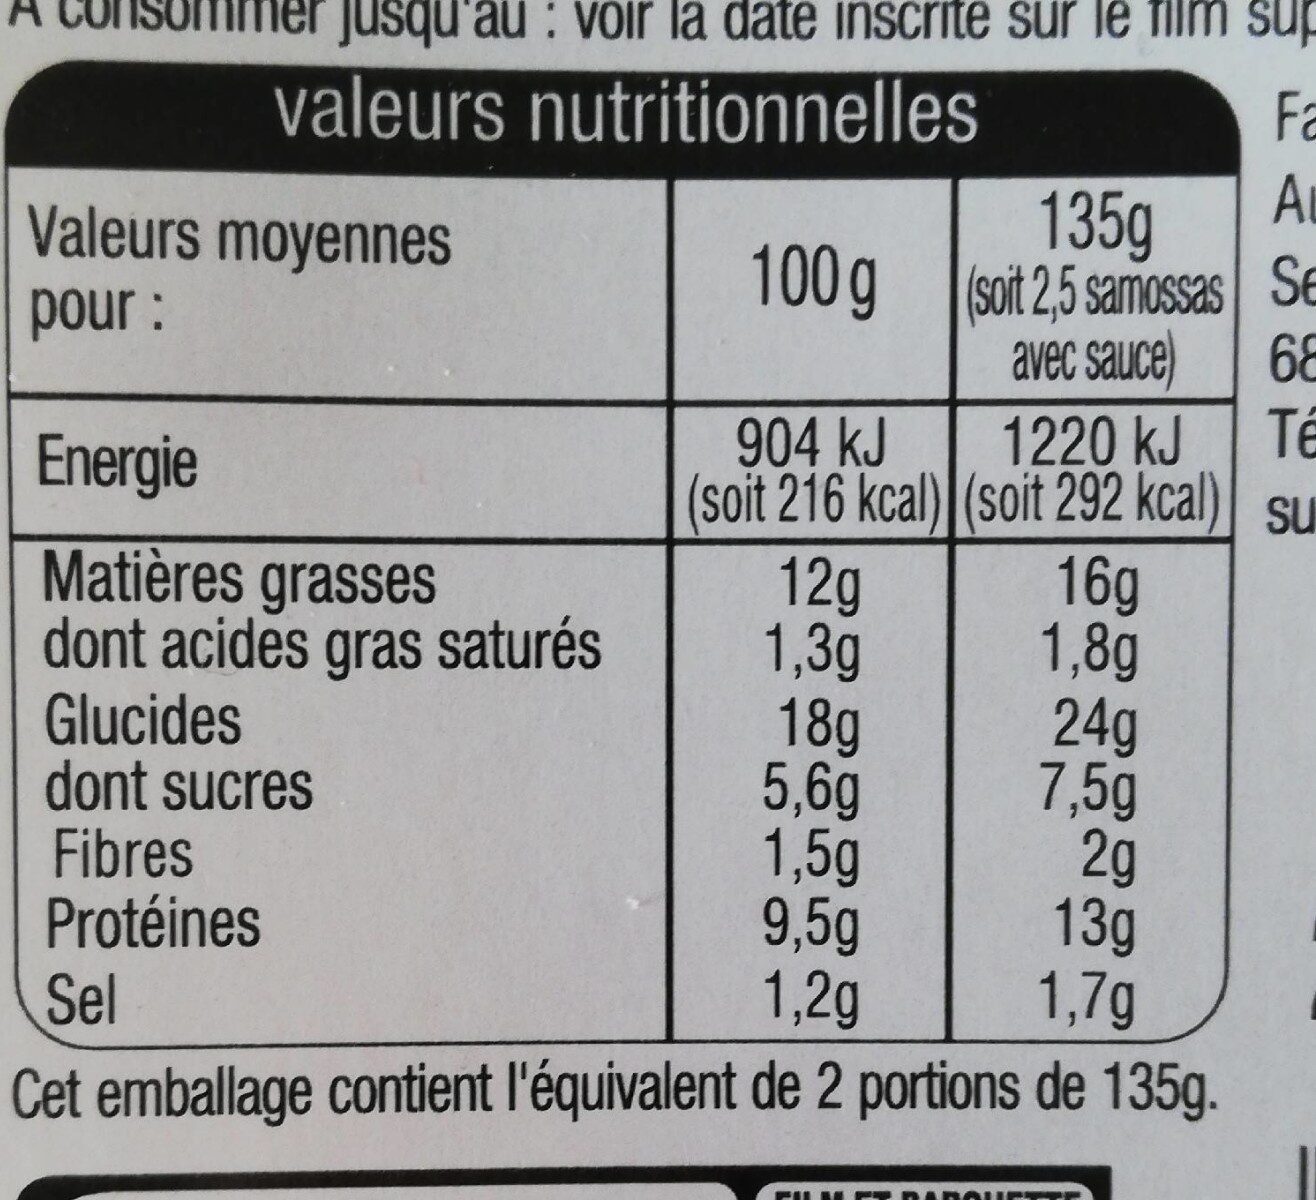 Recette d'indesamossa pouletsauces aigre douce4 +1 offert - Nutrition facts - fr